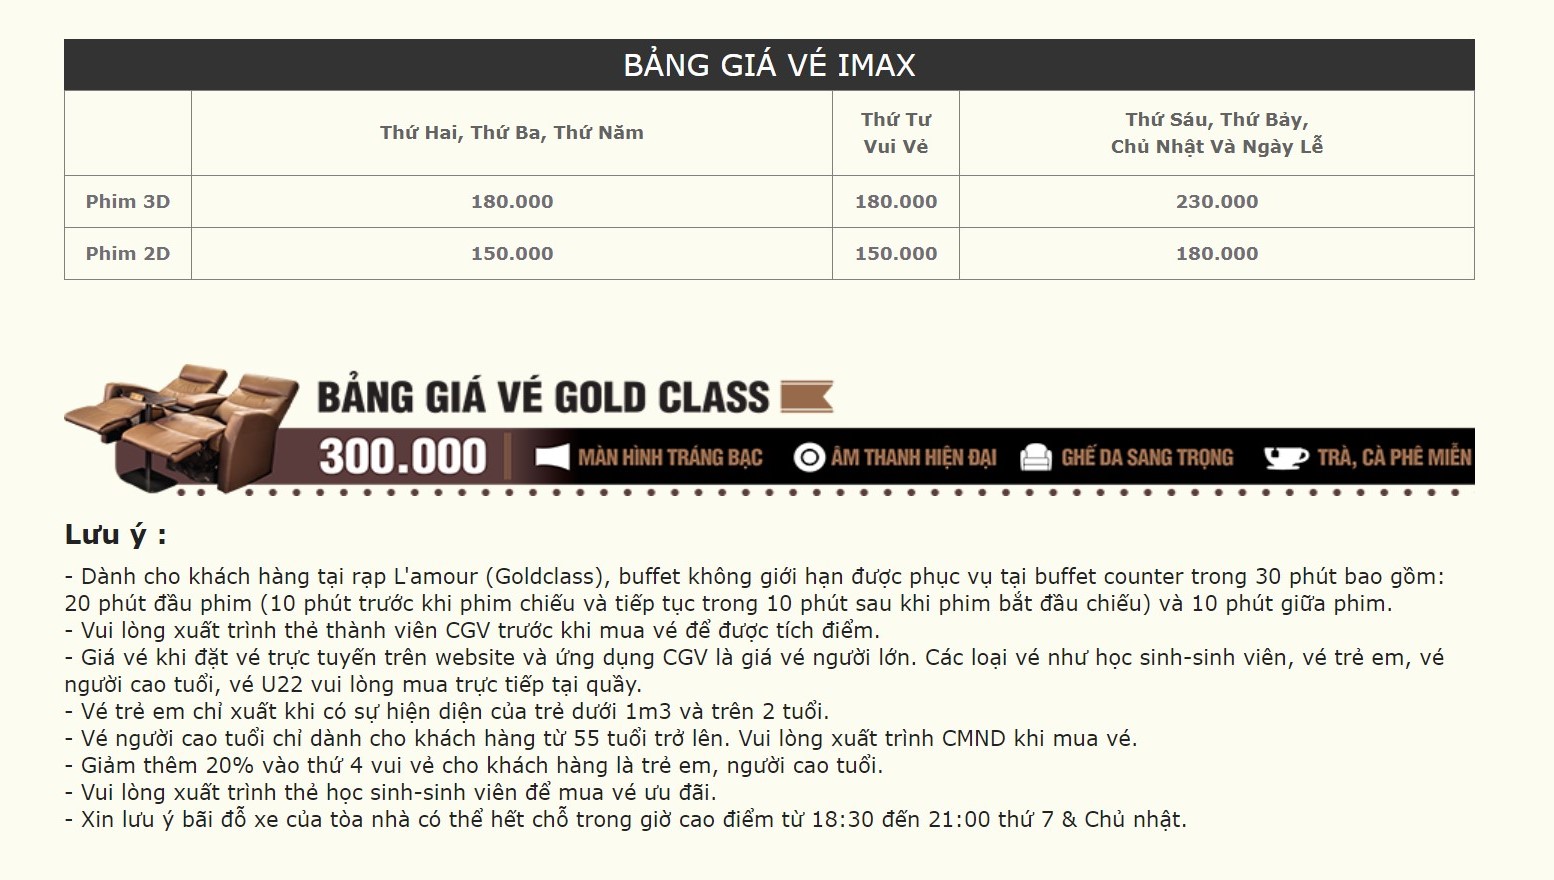 Bảng giá vé Imax và Gold Class